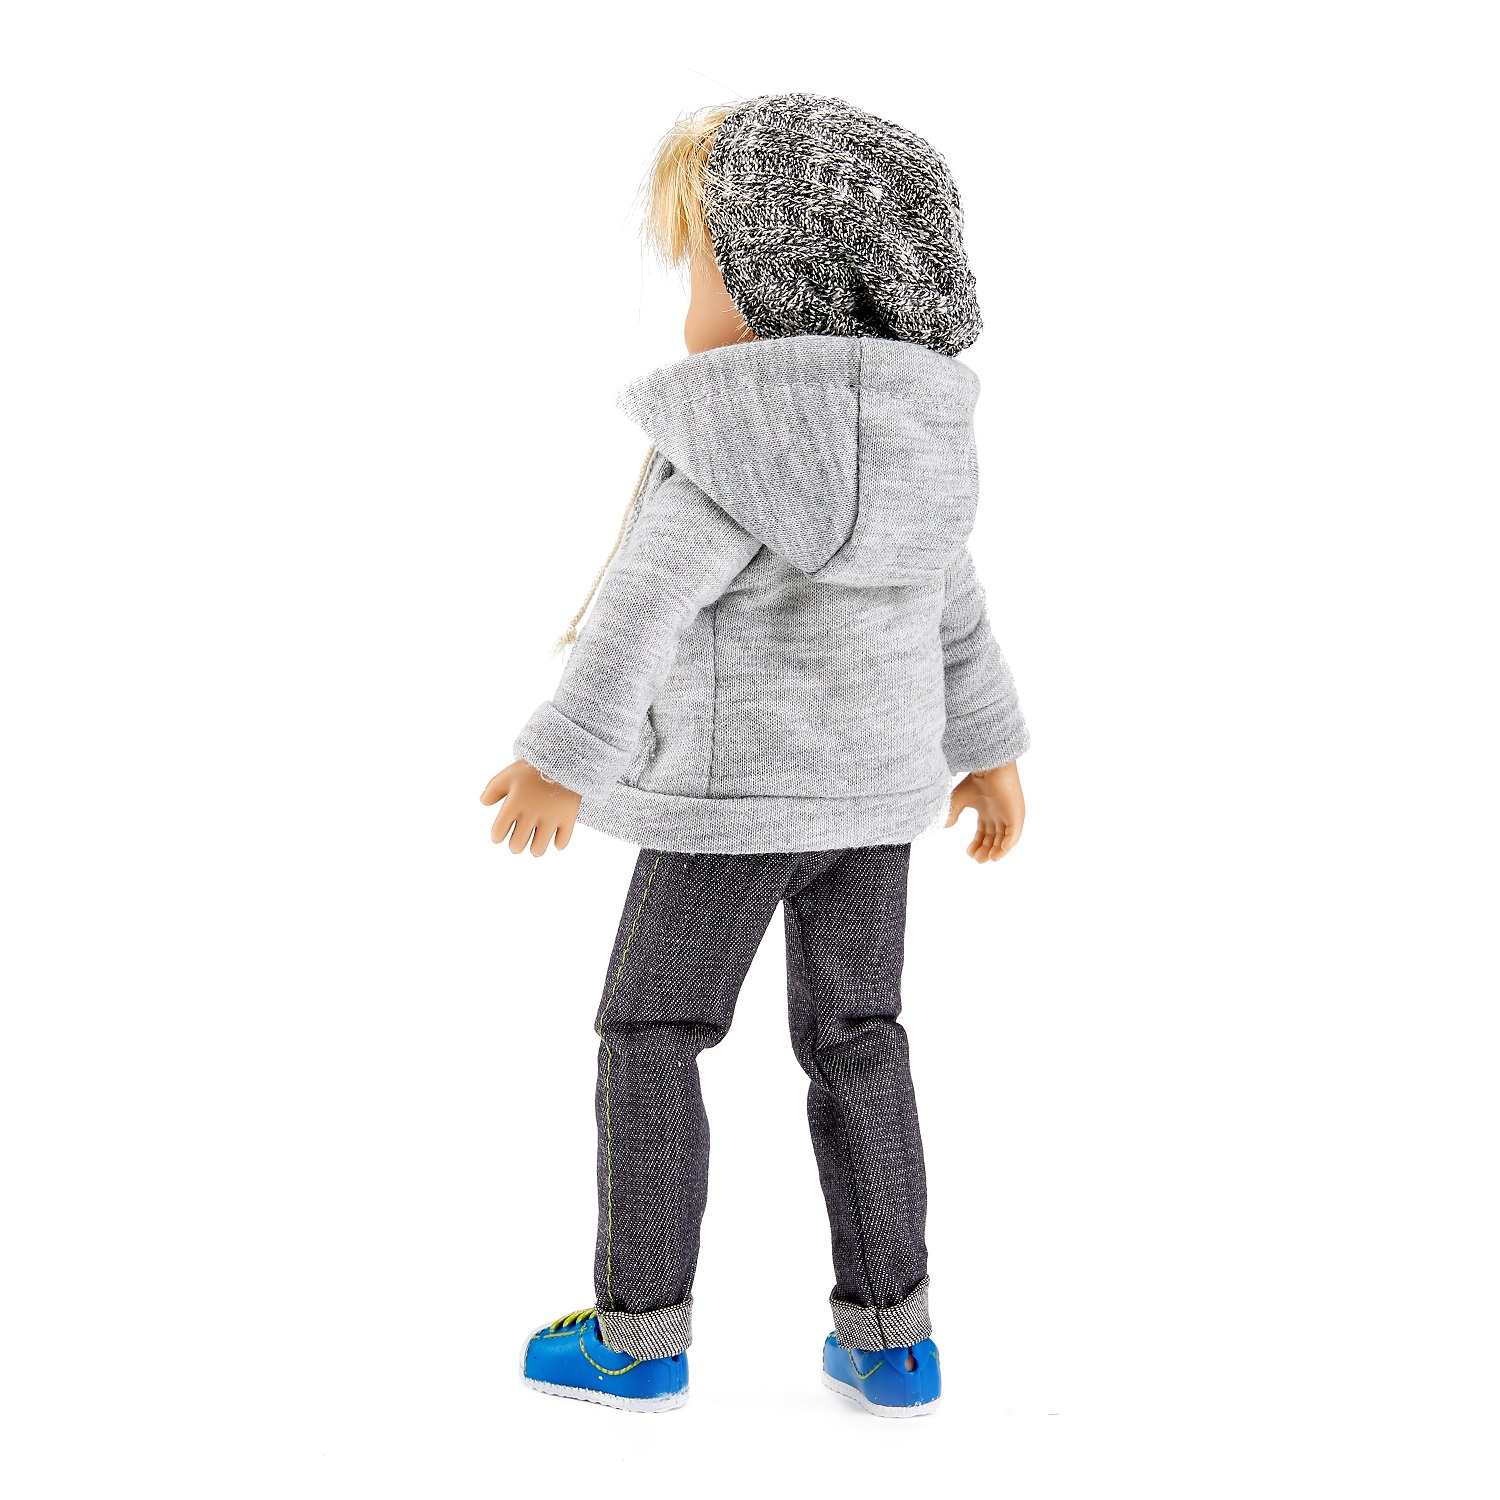 Кукла Михаэль в повседневной одежде, 23 см.  